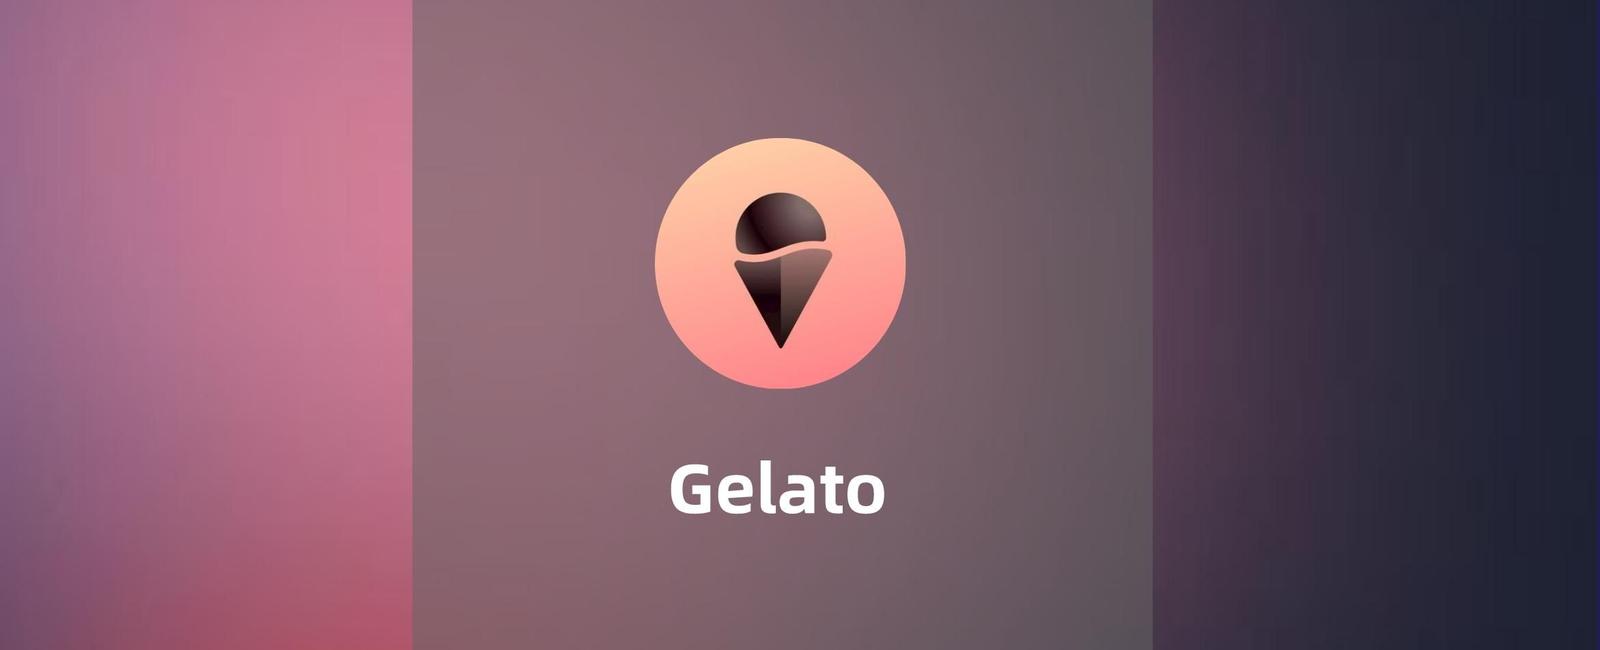 Gelato-自动化世界的探索者